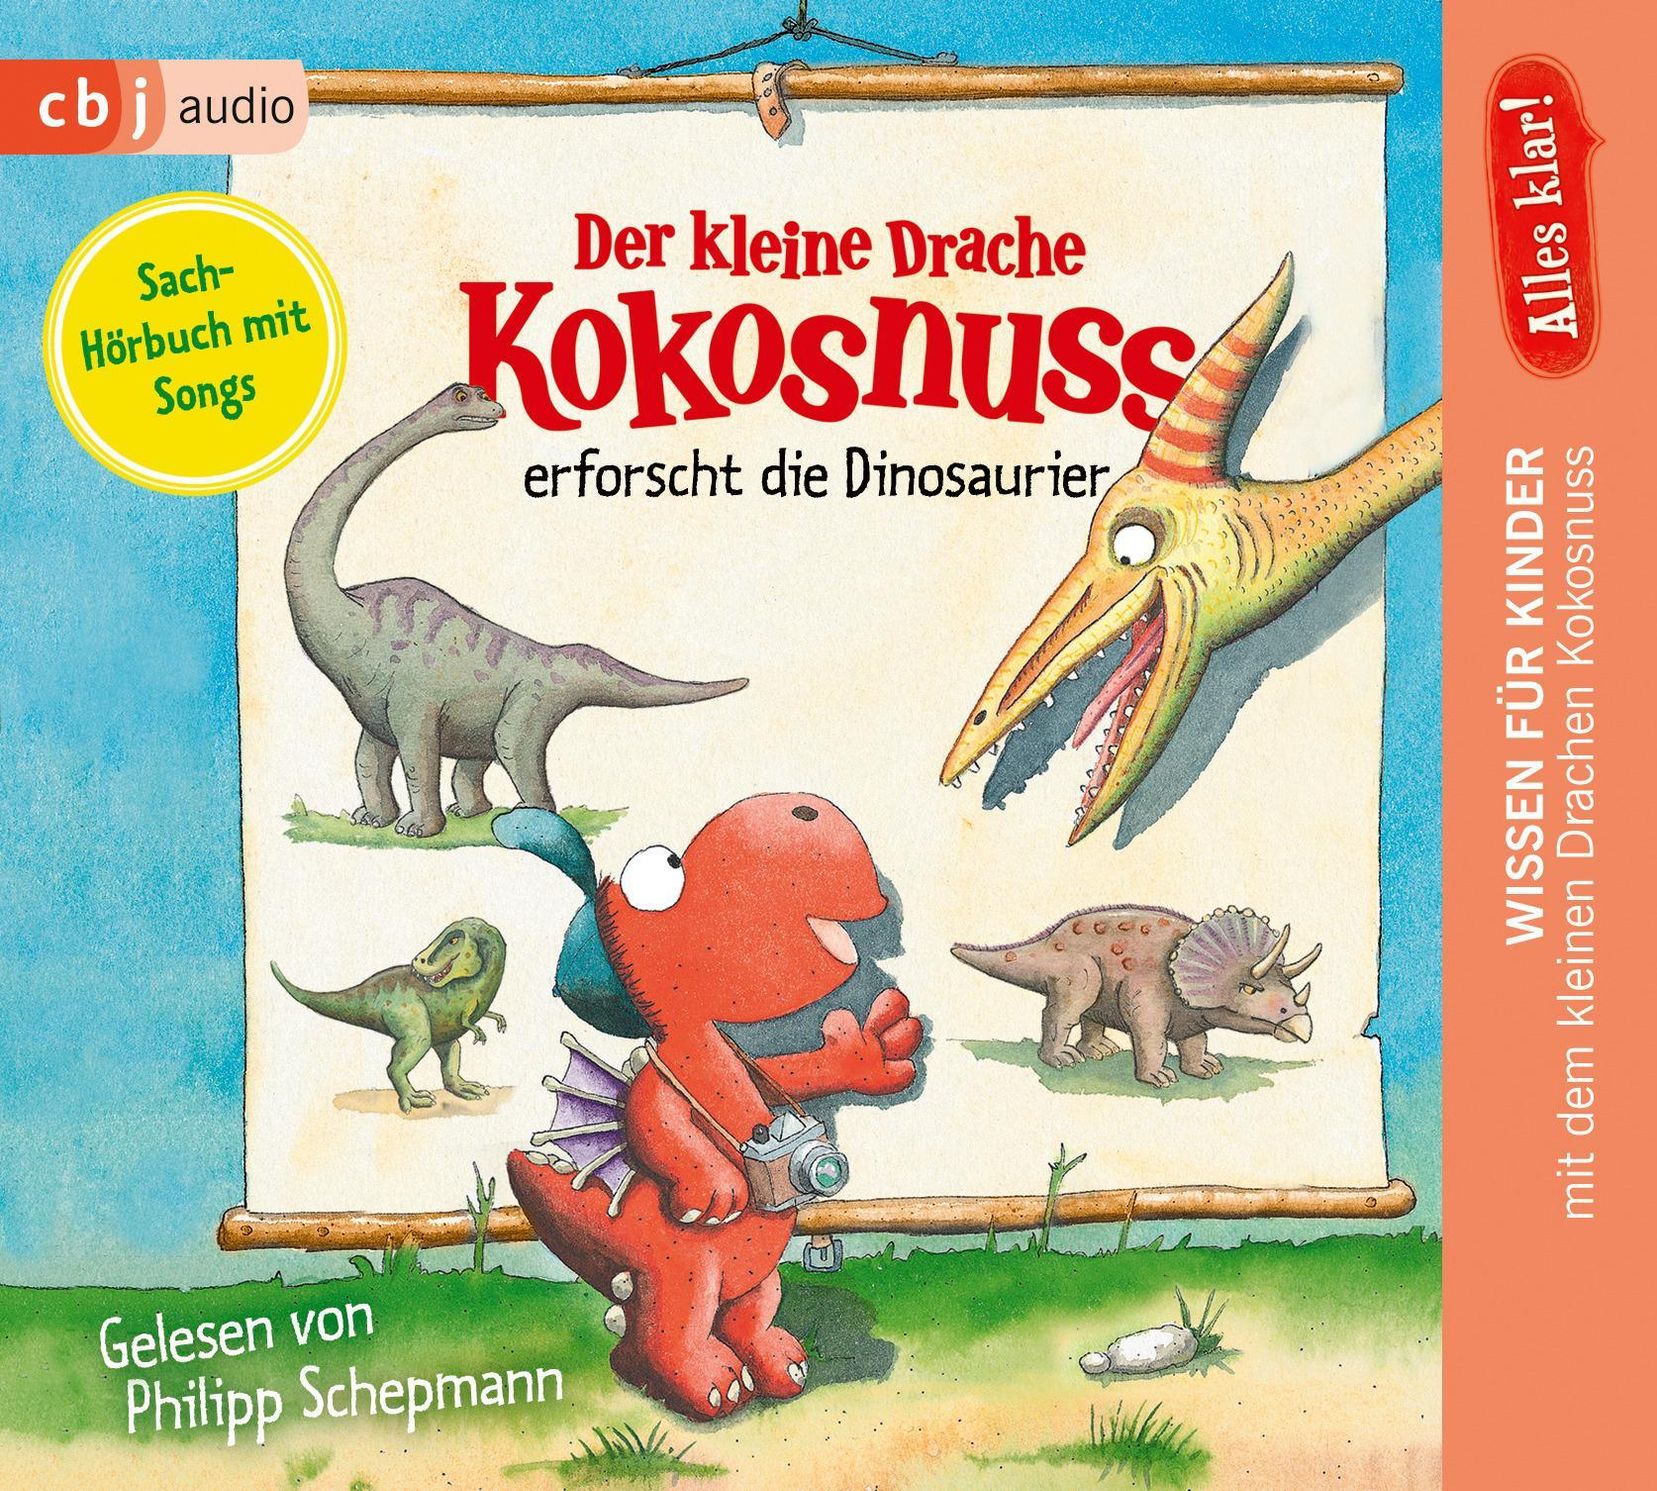 Der kleine Drache Kokosnuss - Alles klar! - 1 - Der kleine Drache Kokosnuss  erforscht die Dinosaurier Hörbuch